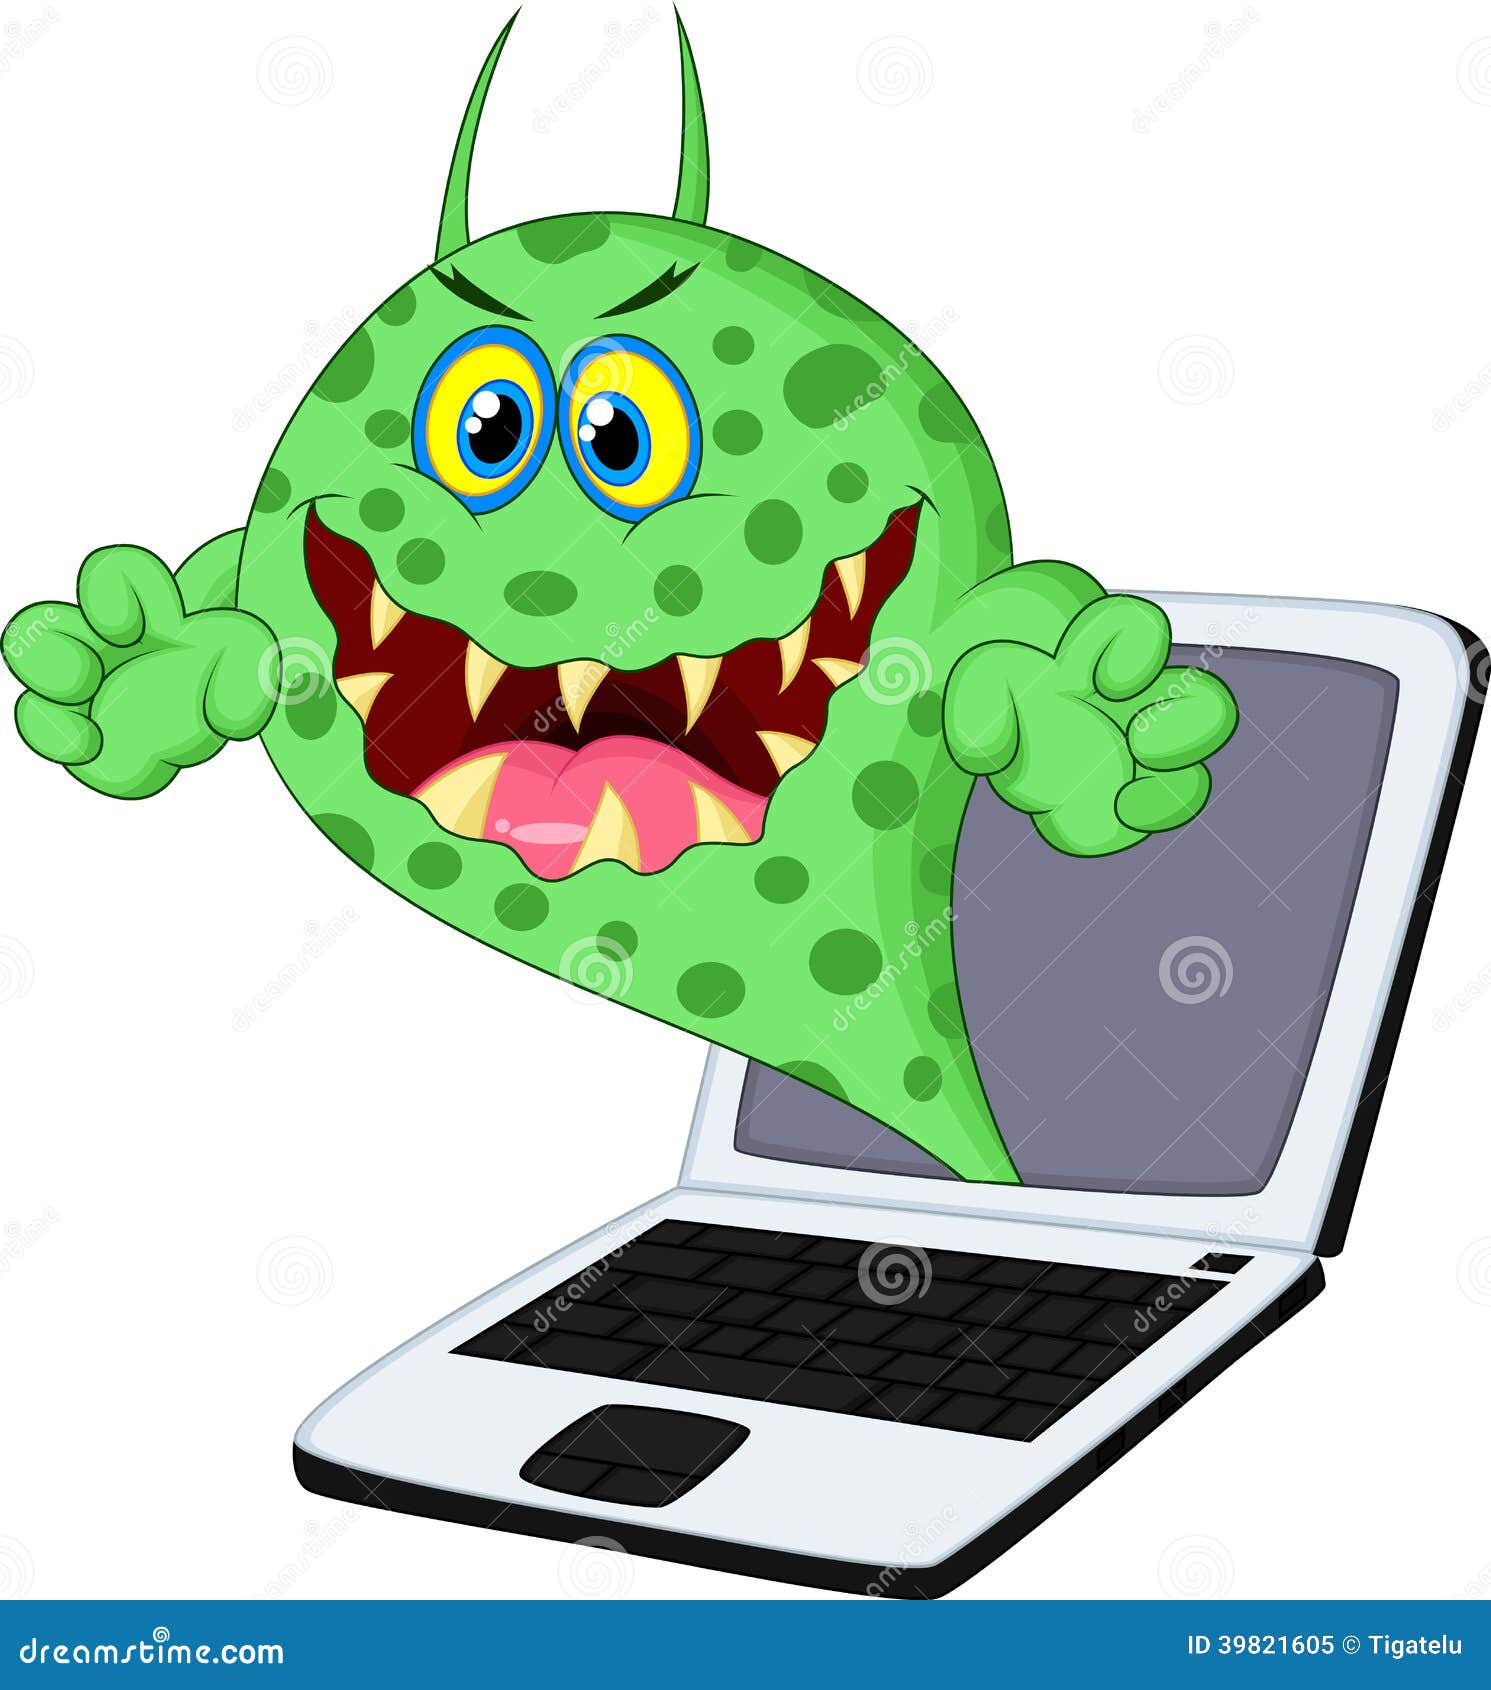 Cartoon Virus On Laptop Stock Vector Illustration Of Internet